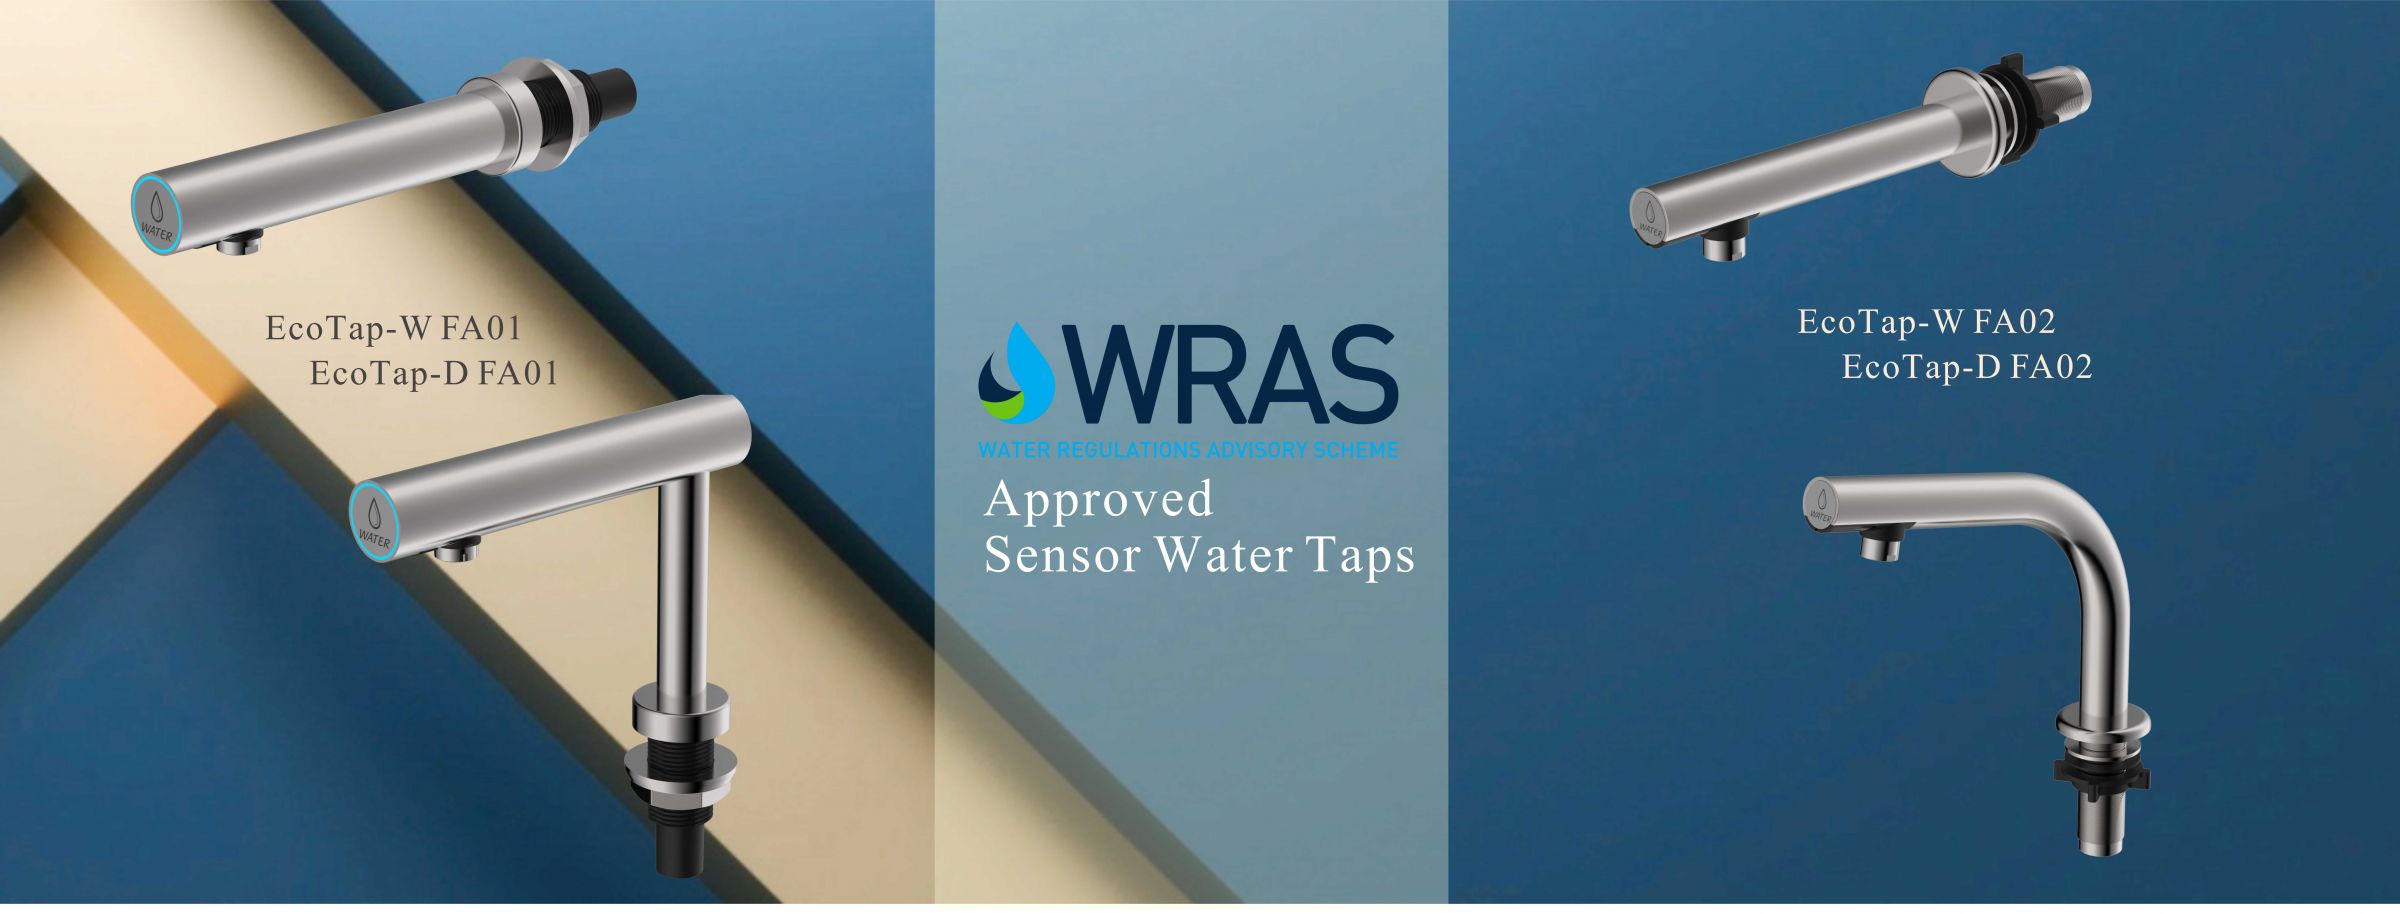 WRAS-zugelassene automatische Wasserhähne